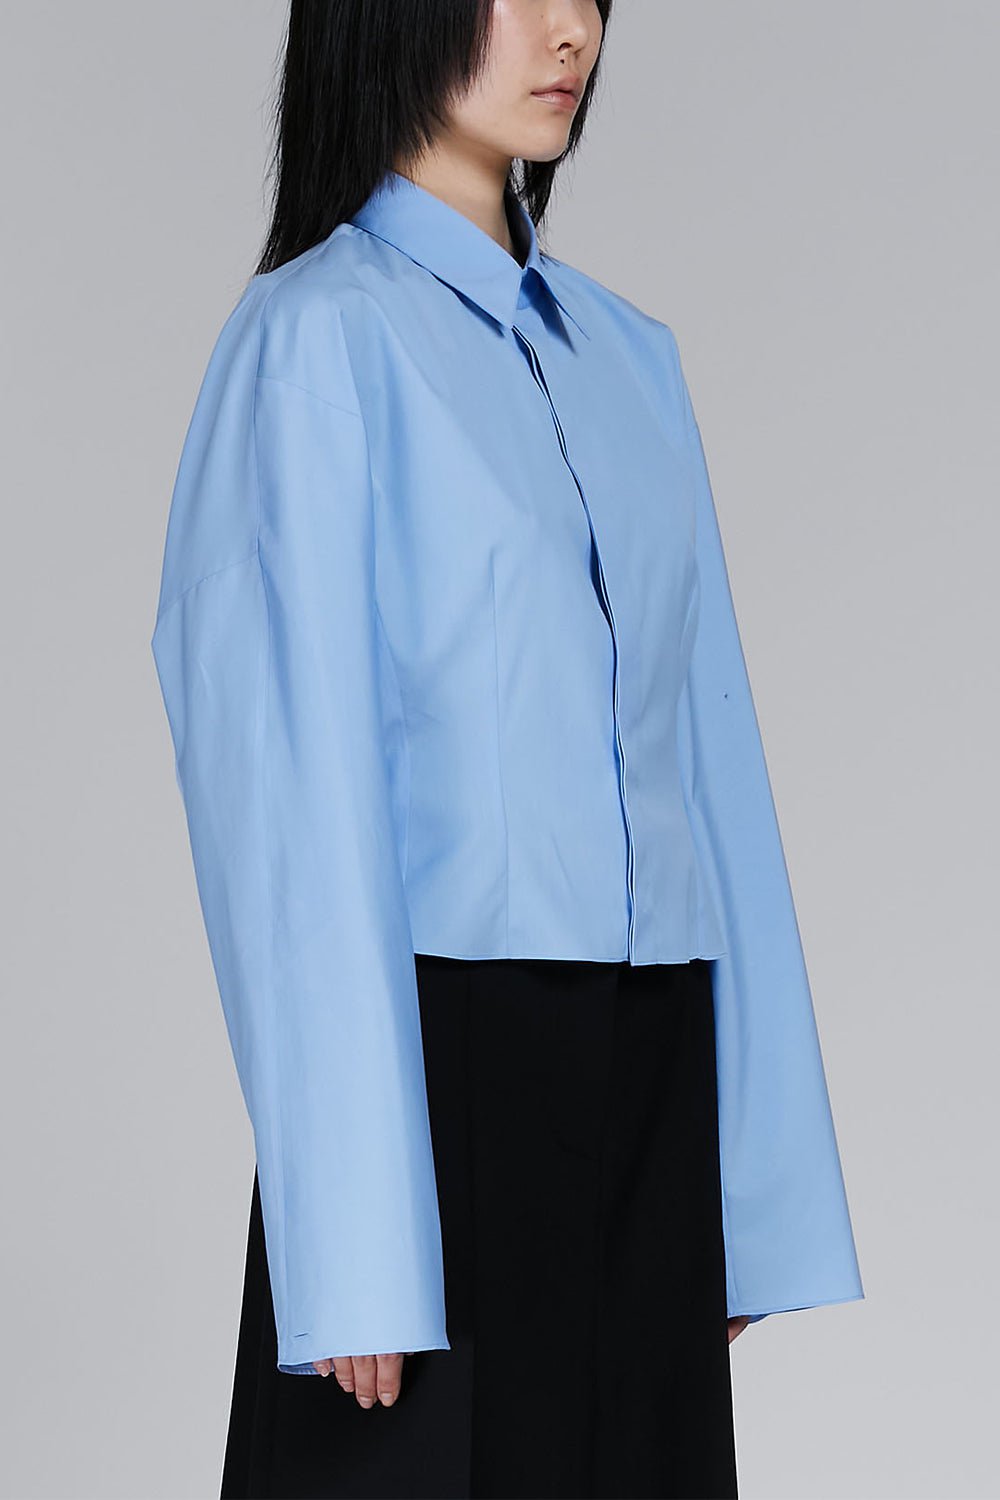 MARNI-Gathered Shirt - Iris Blue-